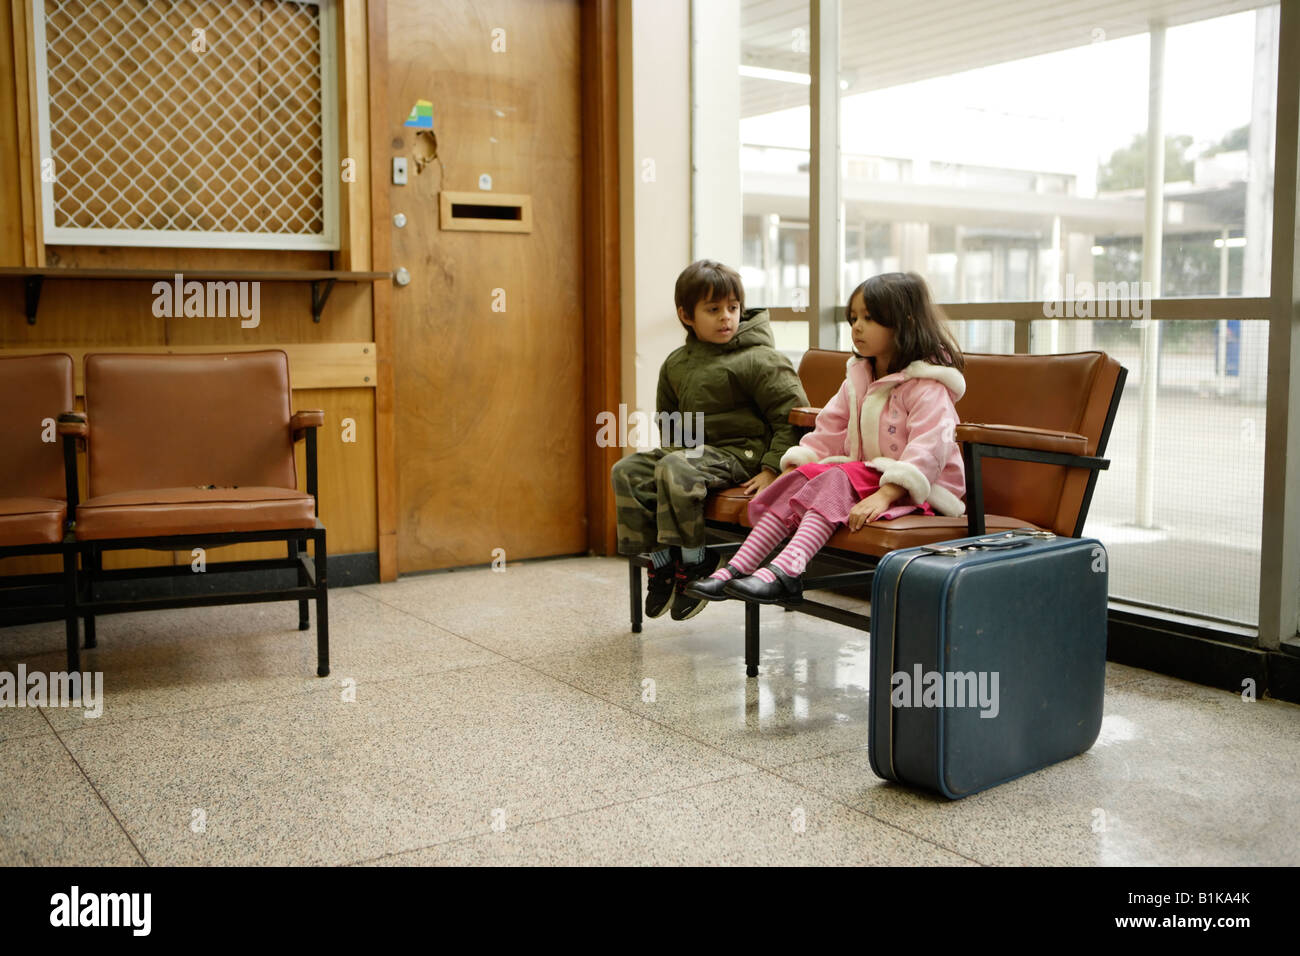 Bruder und Schwester in Bahn Bahnhof Wartezimmer junge im Alter von sechs Mädchen im Alter von vier Jahren Stockfoto